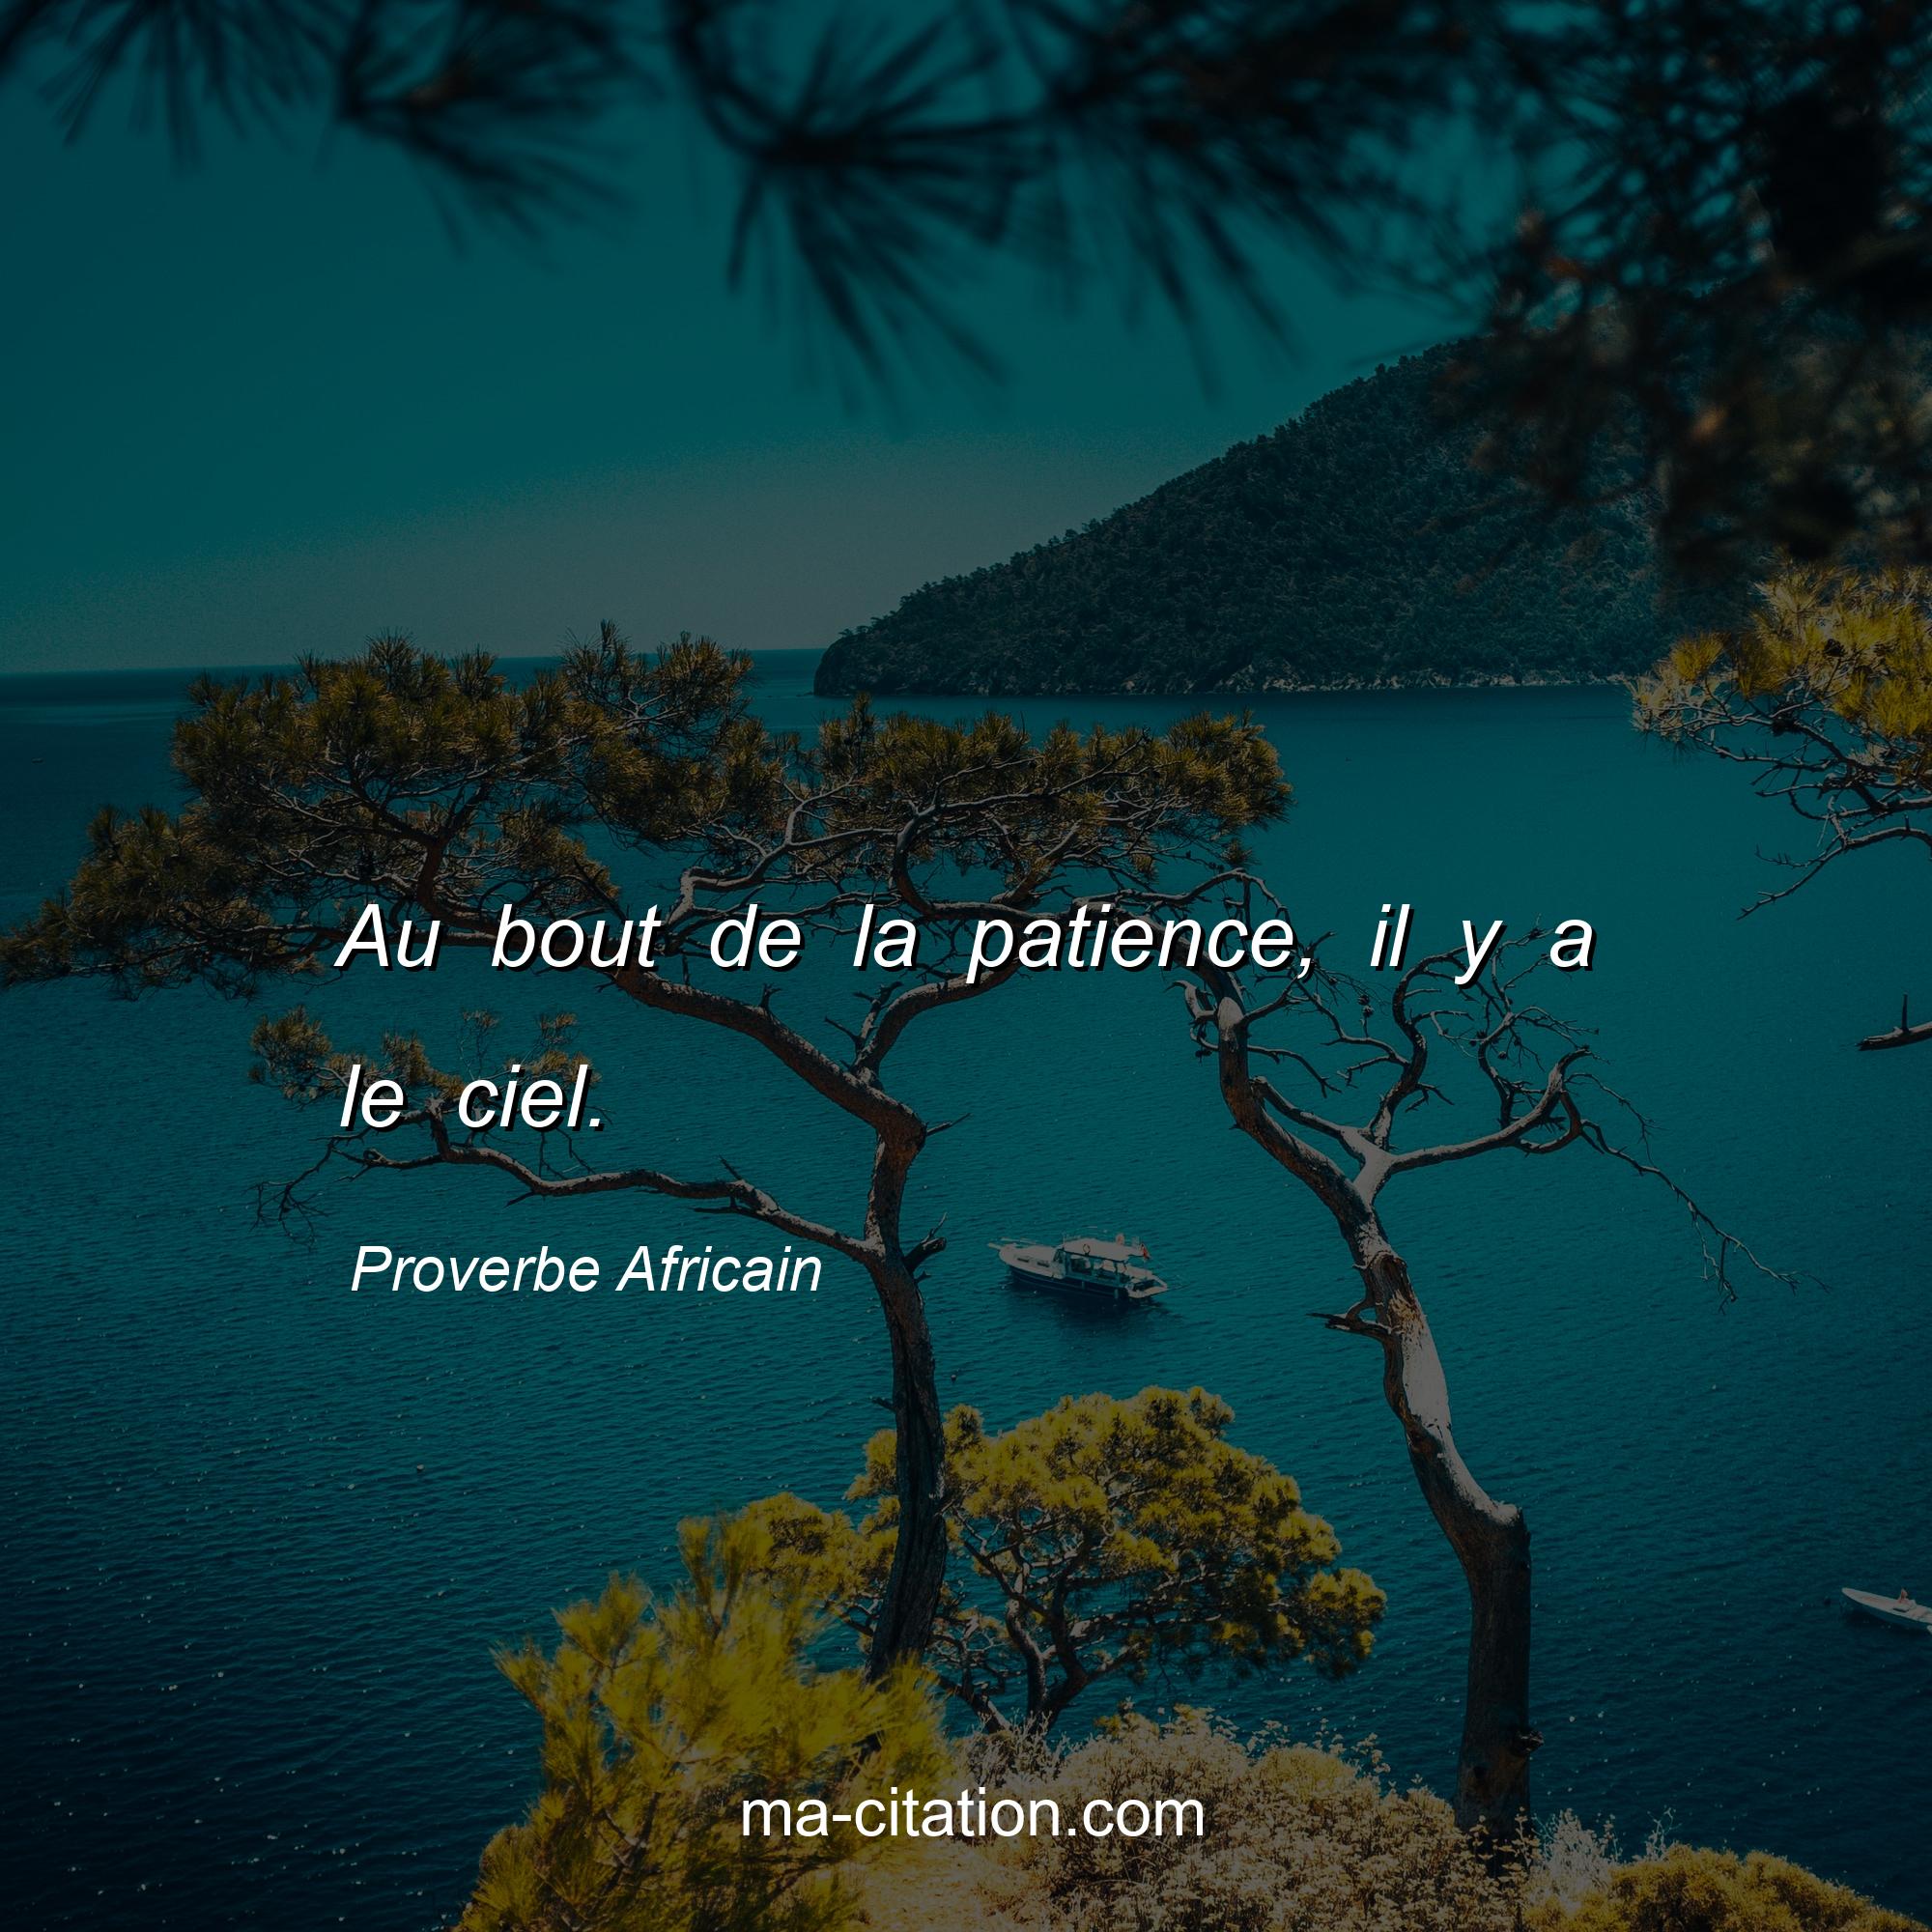 Proverbe Africain : Au bout de la patience, il y a le ciel.